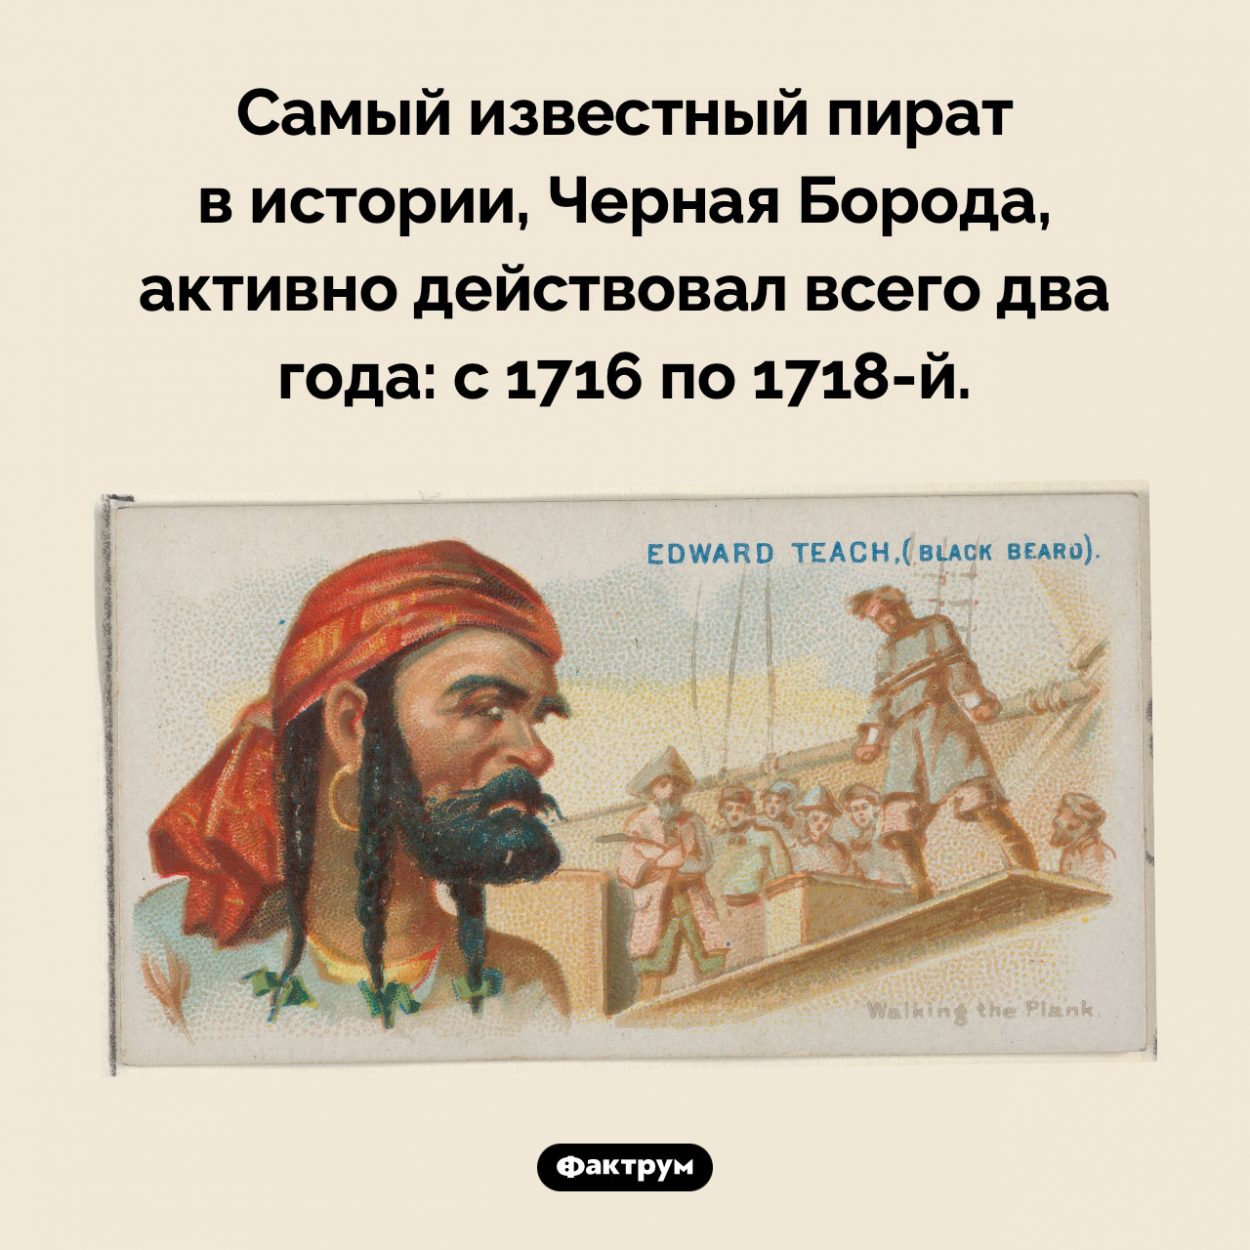 Сколько действовал Черная Борода. Самый известный пират в истории, Черная Борода, активно действовал всего два года: с 1716 по 1718-й.